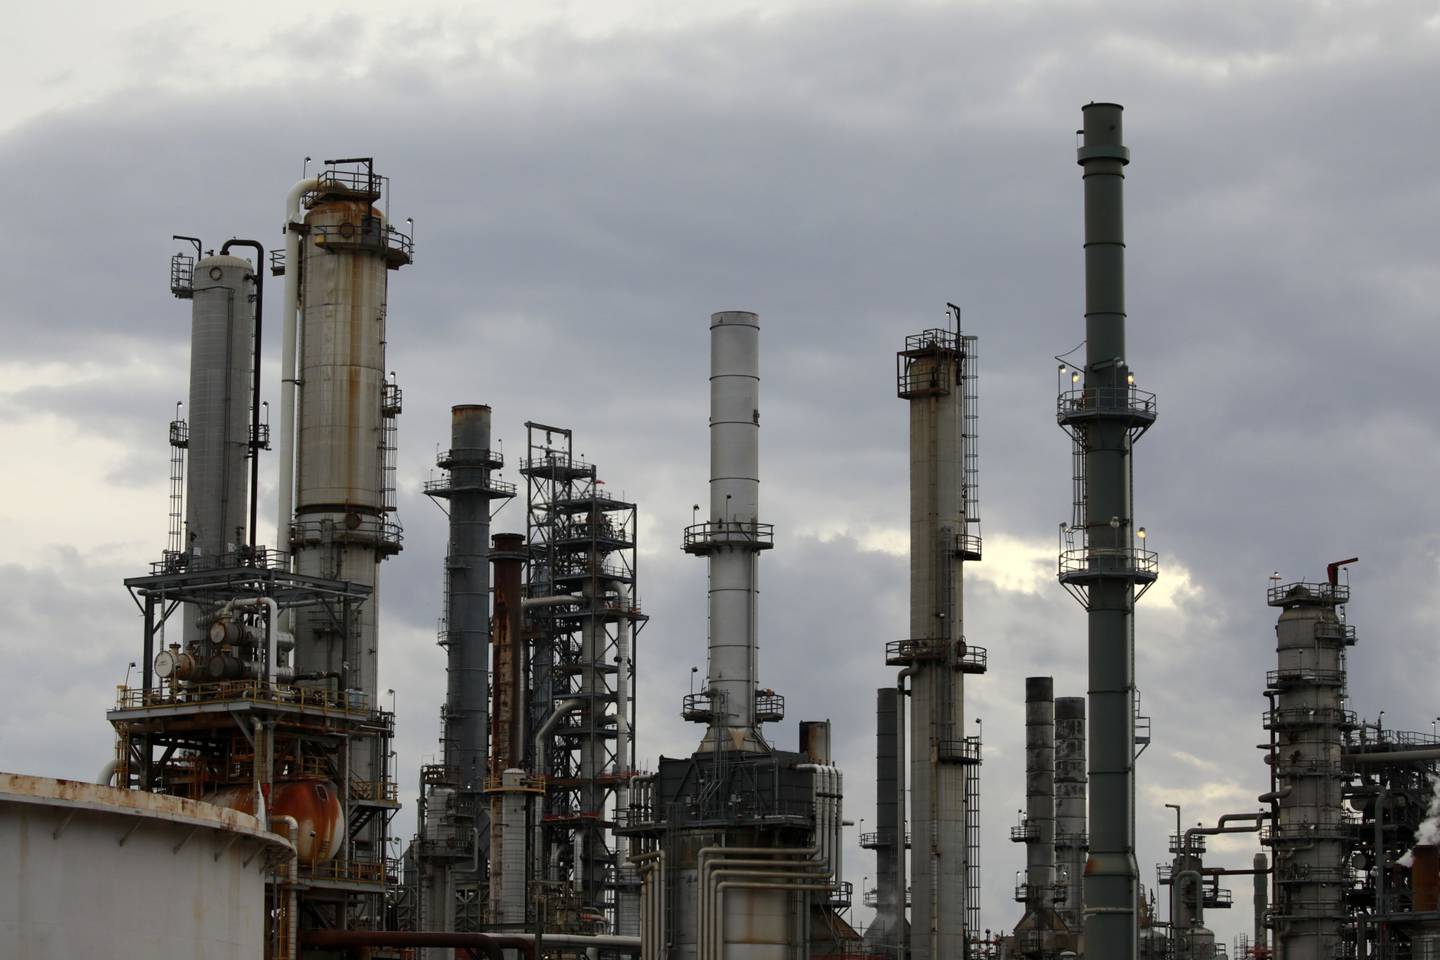 Chimeneas de emisiones en la refinería de petróleo de Valero Energy Corp. en Memphis, Tennessee, EE.UU.